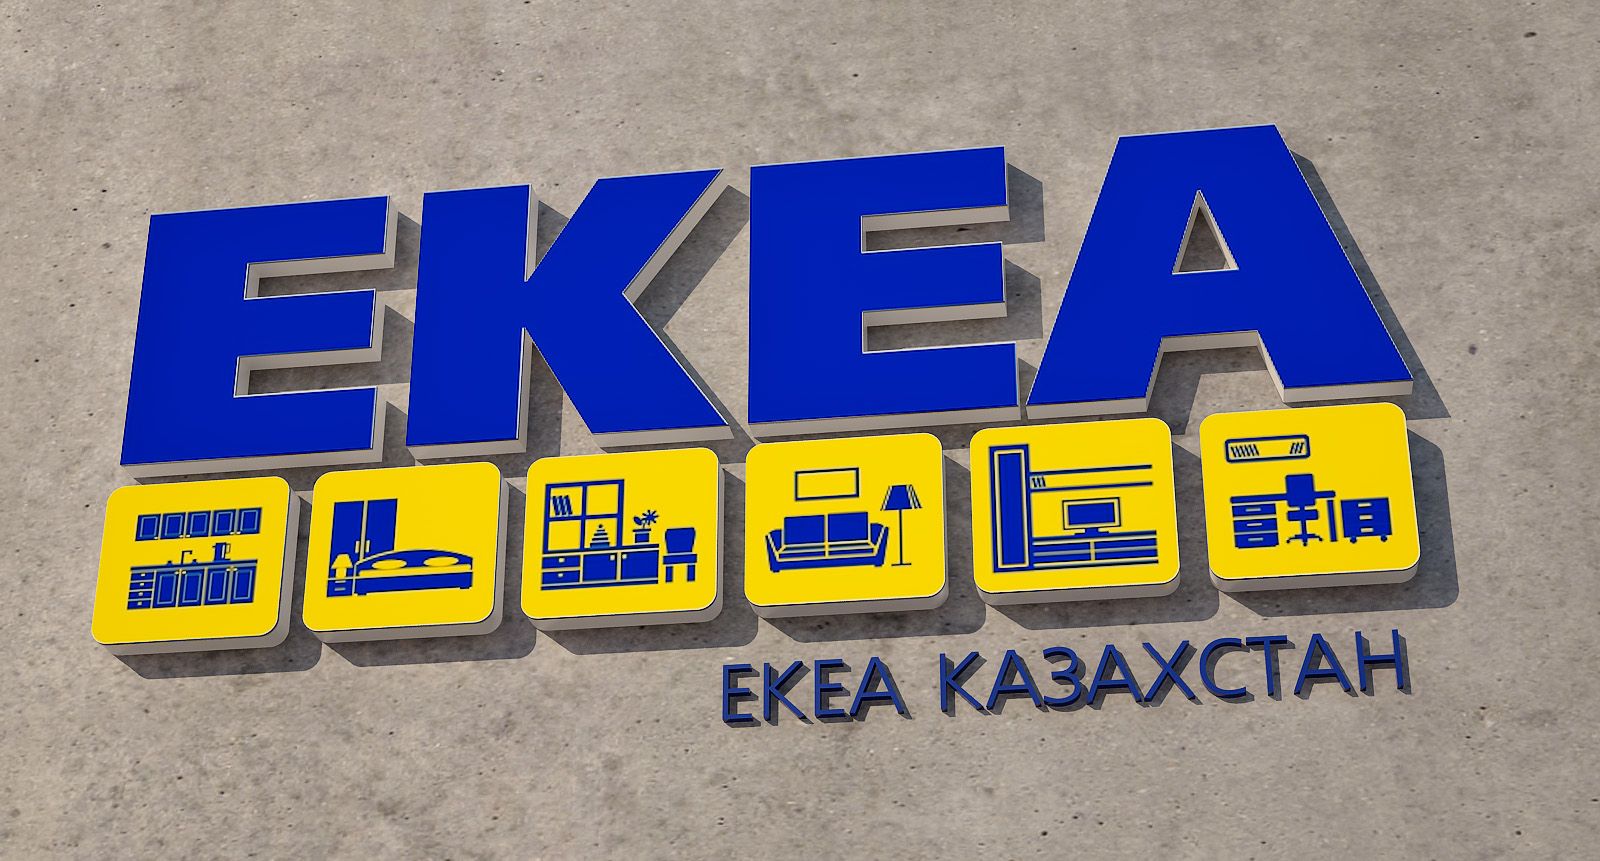 Логи и фирменный стиль для дилера товаров IKEA - дизайнер rabser